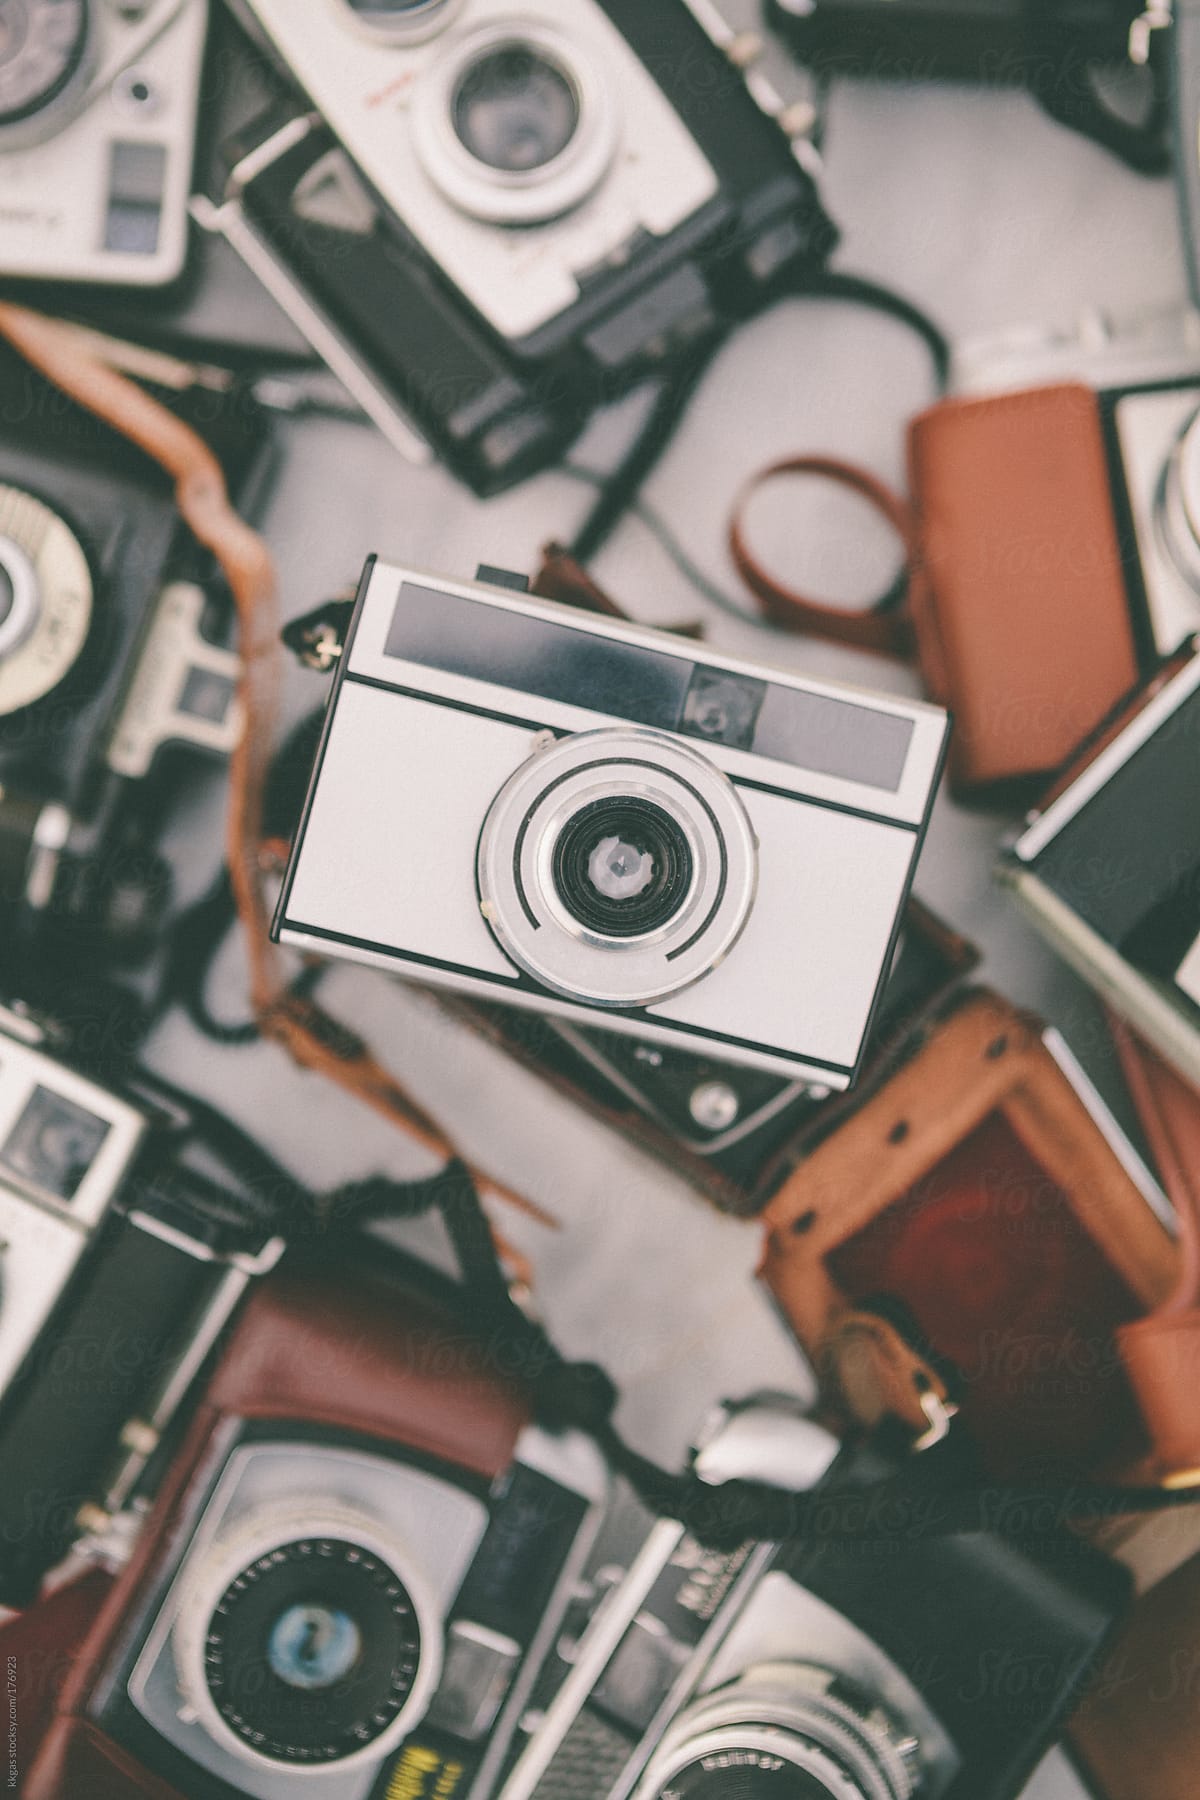 Vintage photographic cameras.